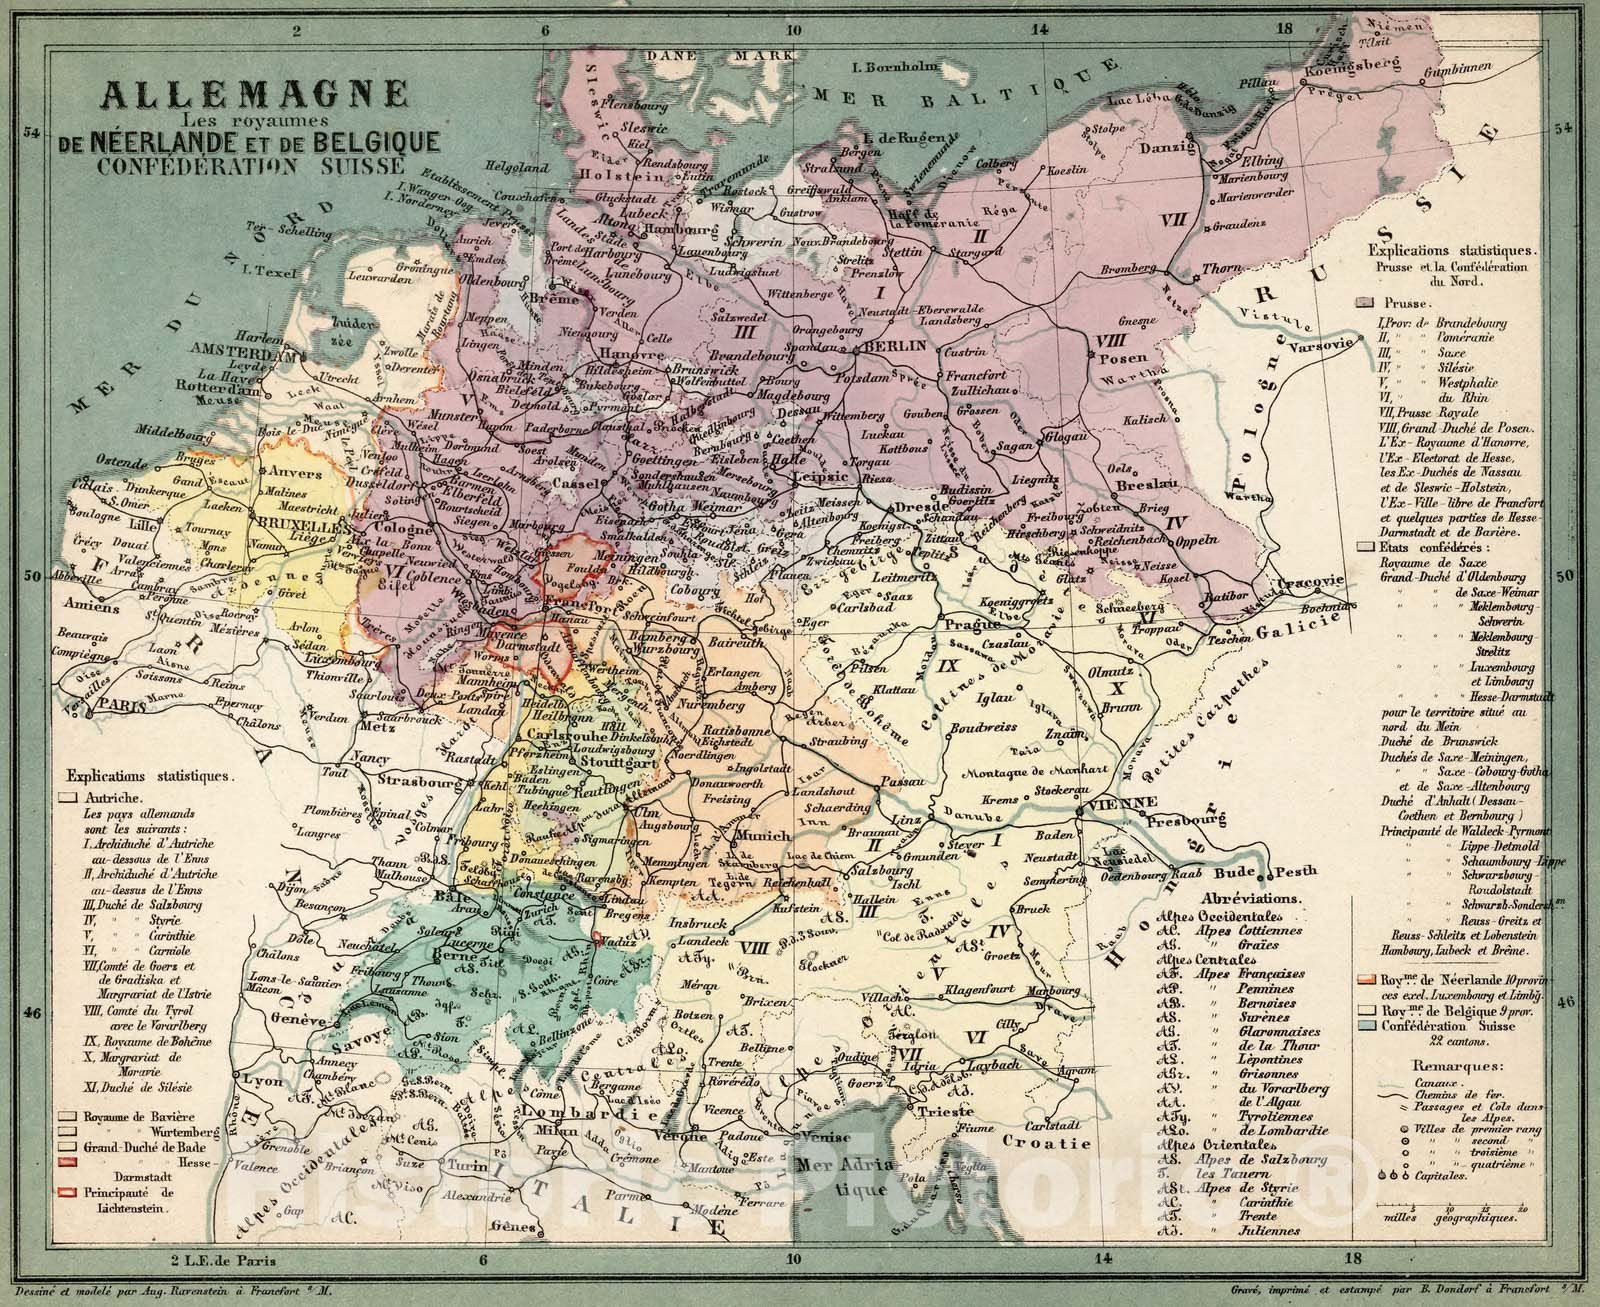 Historic Map : Germany,Allemagne Les royaumes de Neerlande et de Belgique Confederation Suisse 1865 v1 , Vintage Wall Art